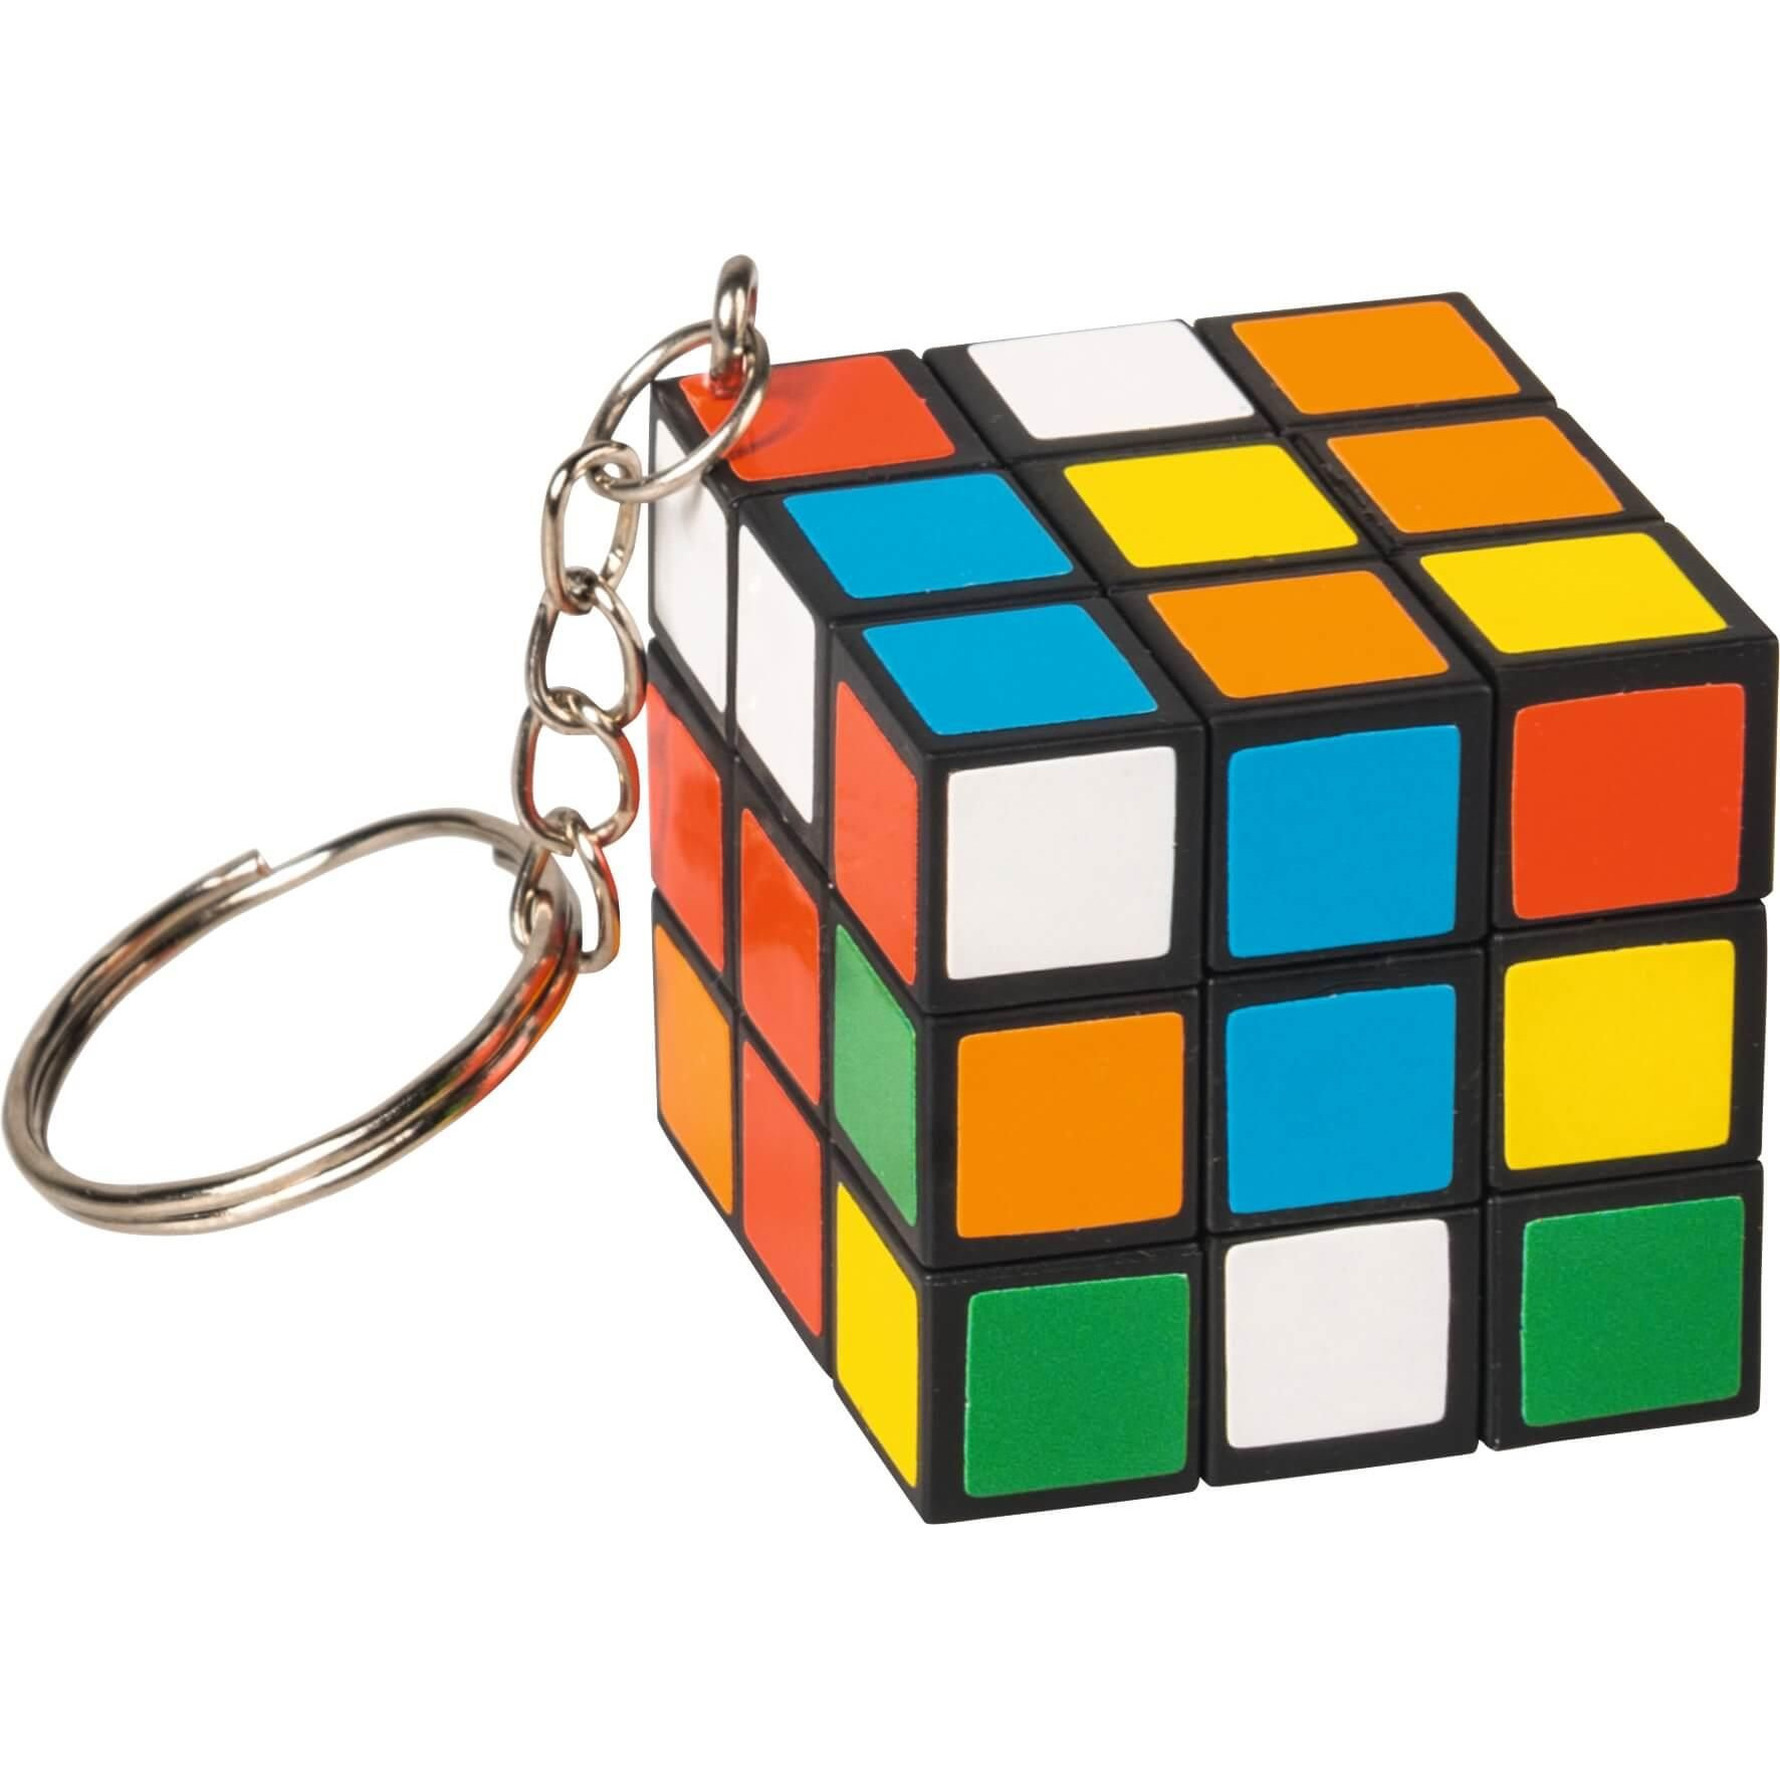 Puzzel kubus aan sleutelhanger 3 x 3 cm